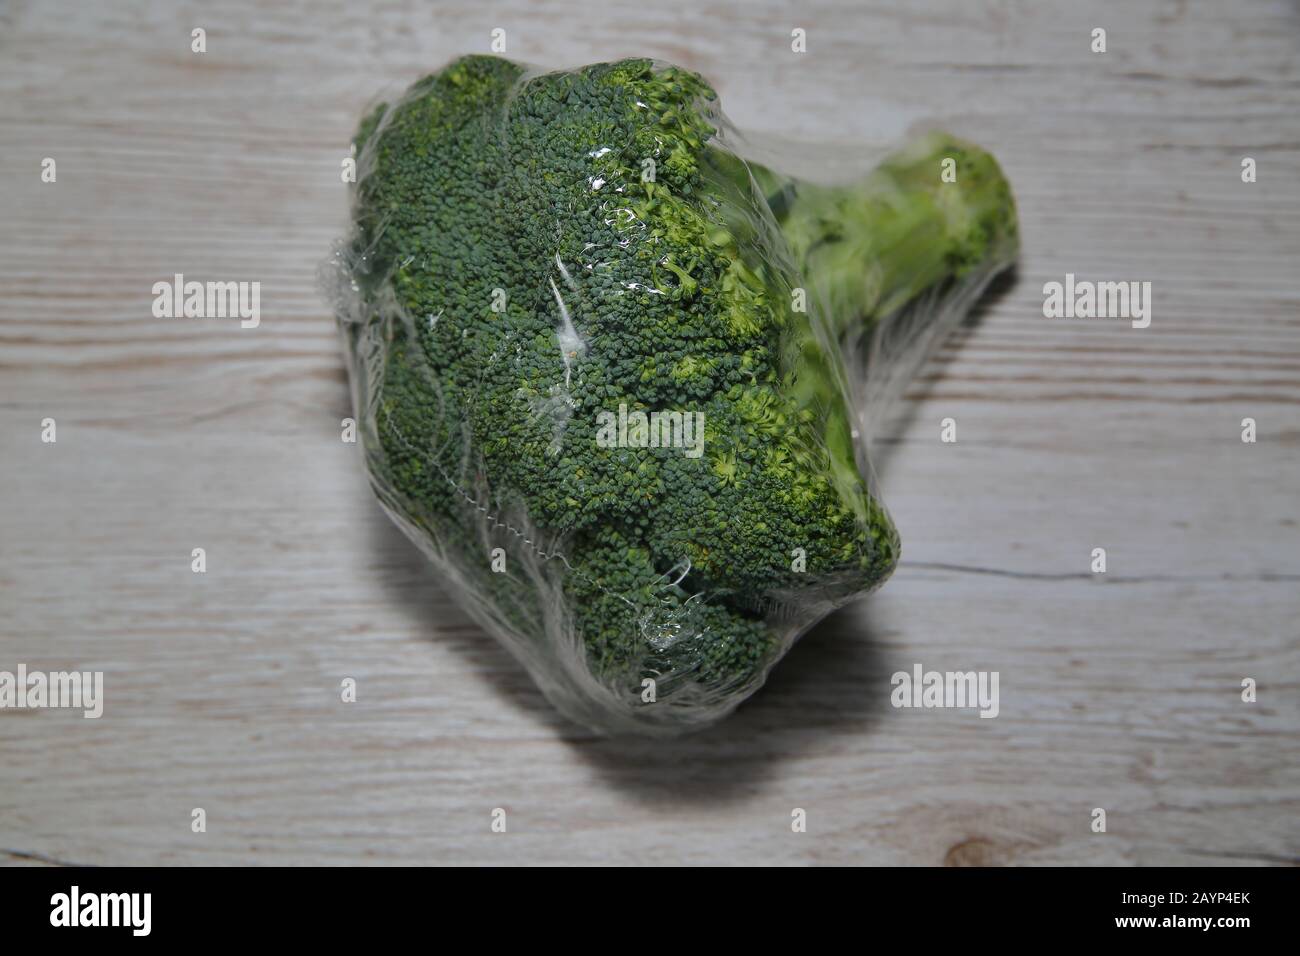 Le brocoli frais vendu au supermarché sous forme de bio, écoemballé en feuille de plastique, se trouve isolé sur la table en bois de gros plan Banque D'Images